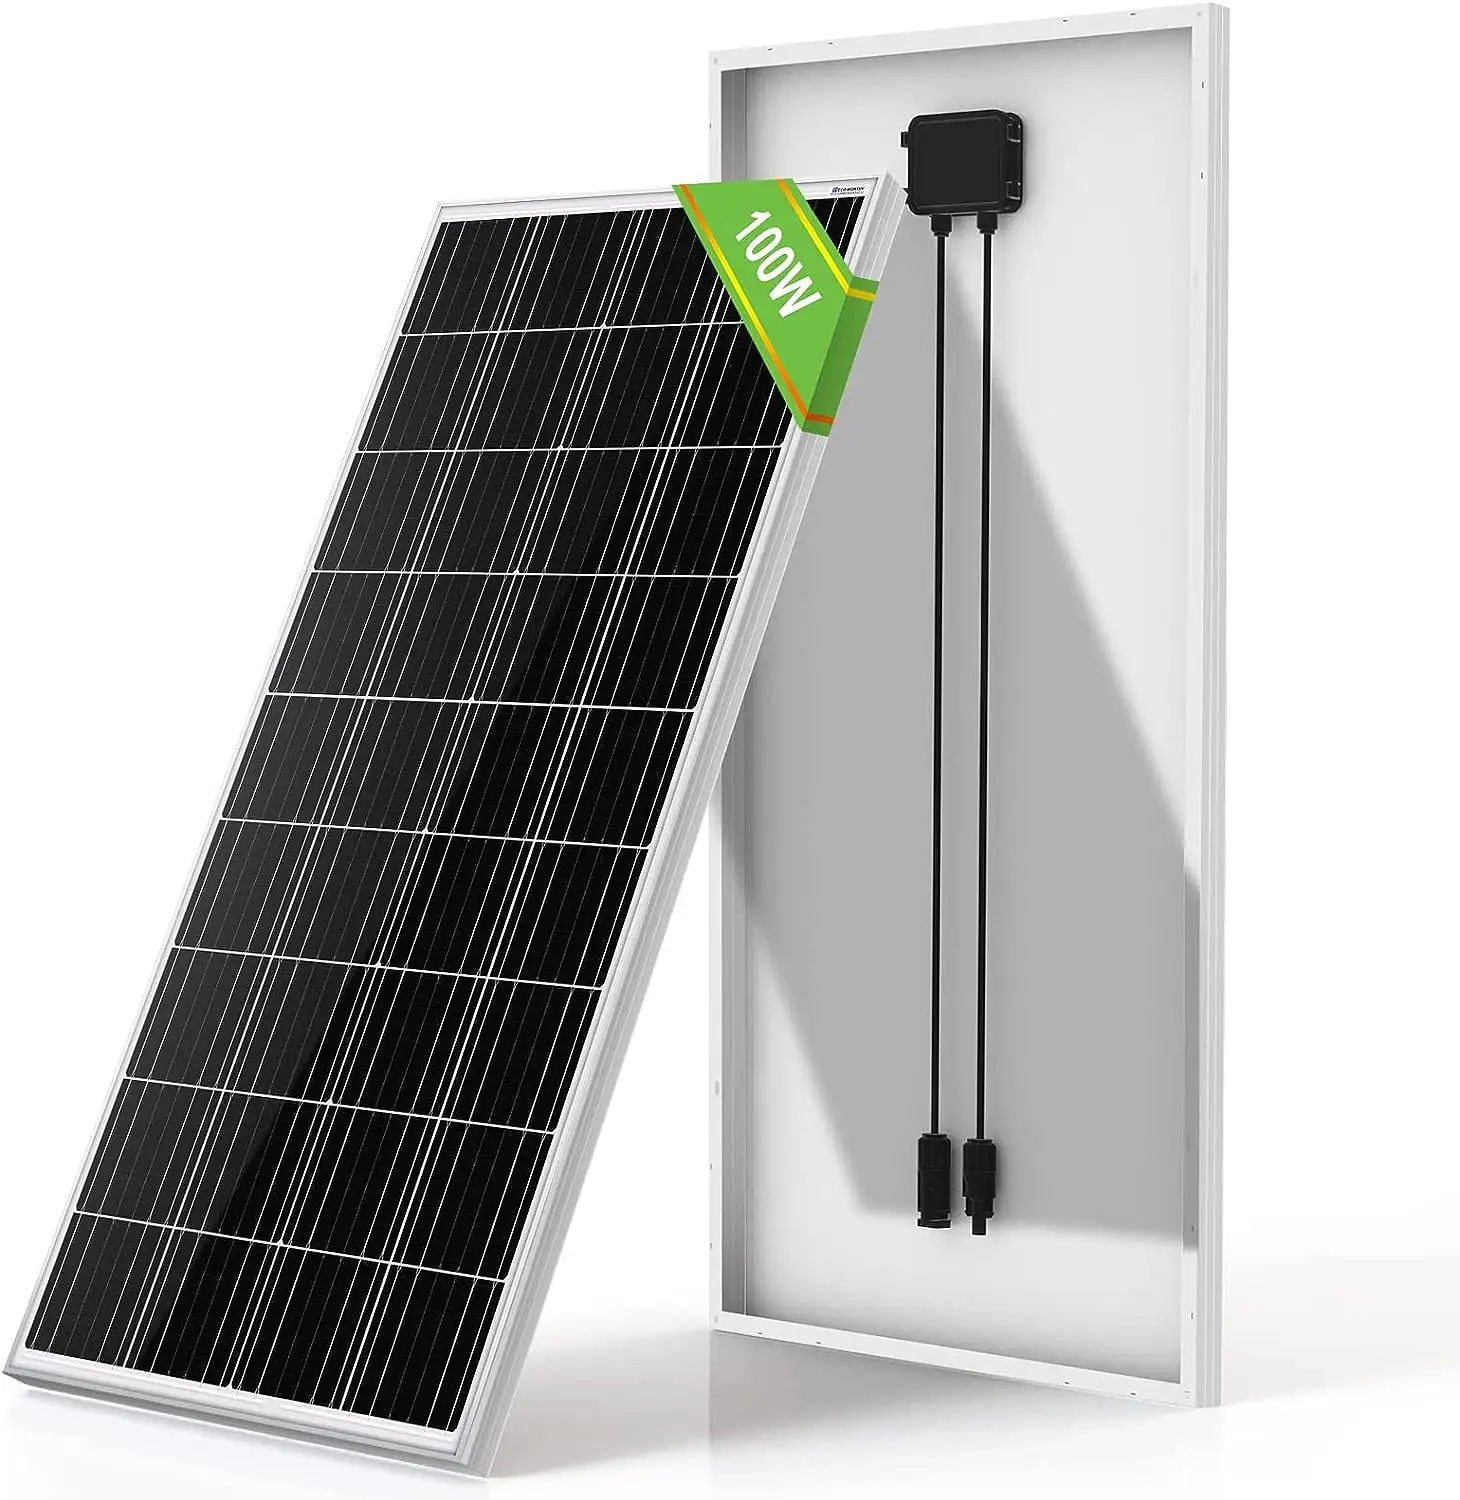 Panel surya mono panel surya, panel surya mono panel surya 24v untuk listrik, 100 watt, 250 watt, 300w